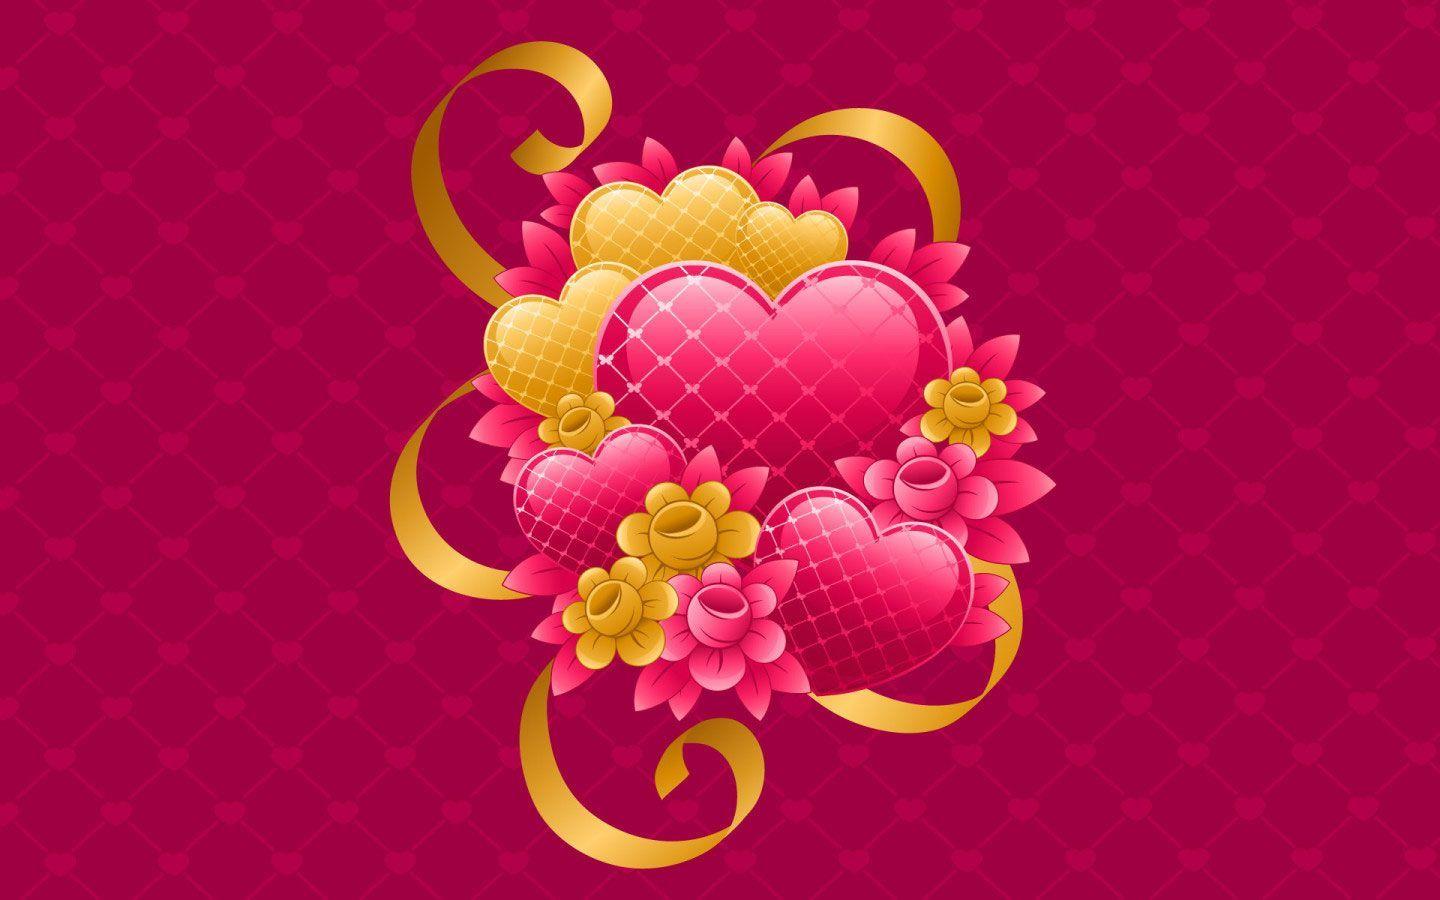 Love Flowers For Valentine day HD Wallpaper. Desktop HD Wallpaper